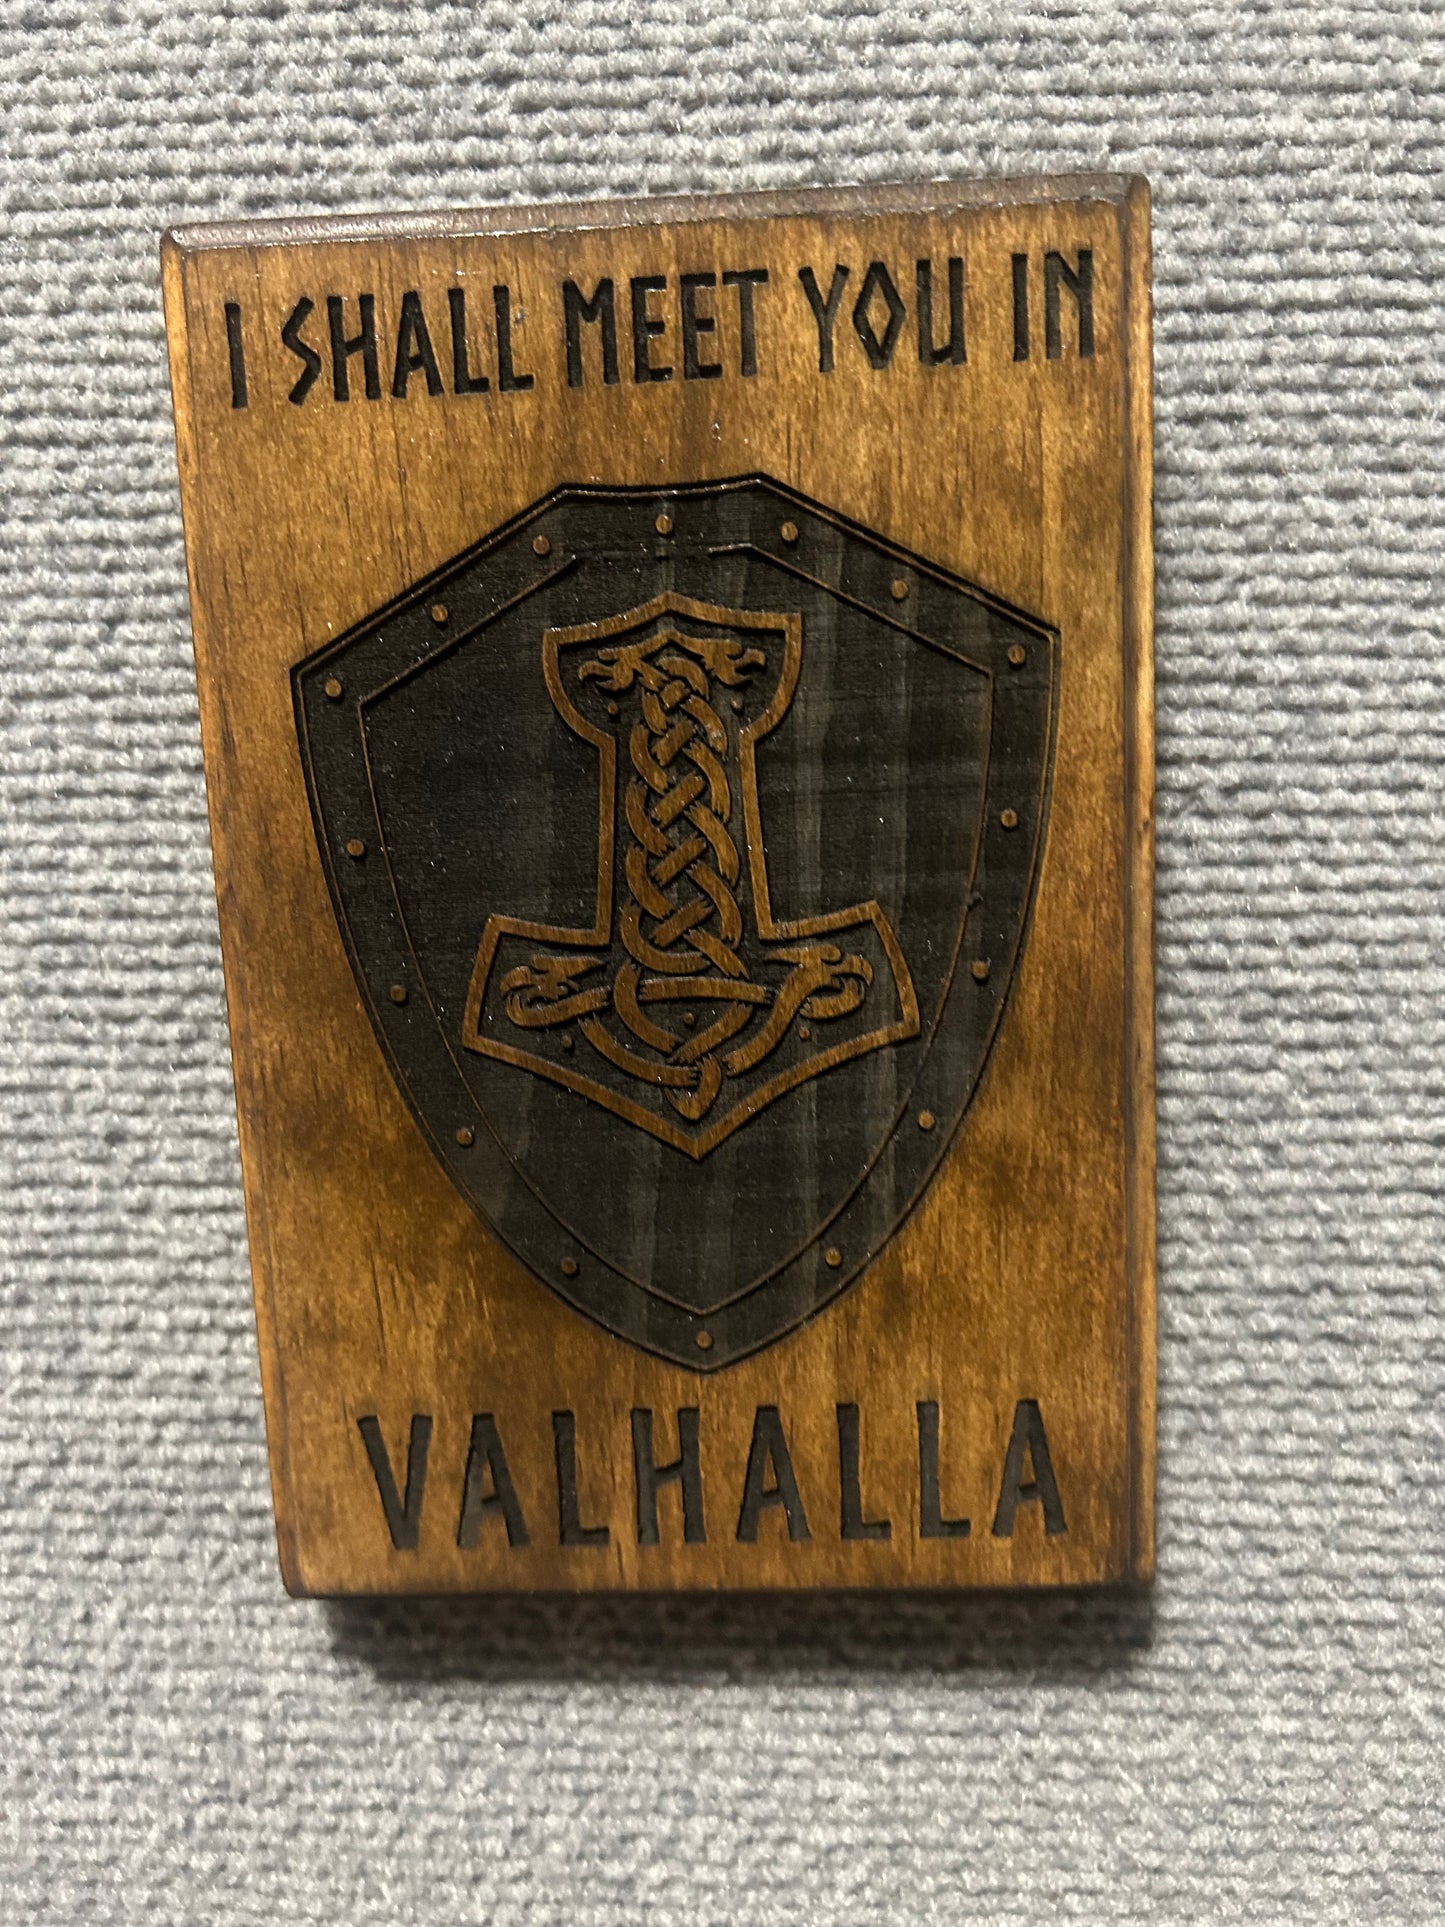 Meet You in Valhalla